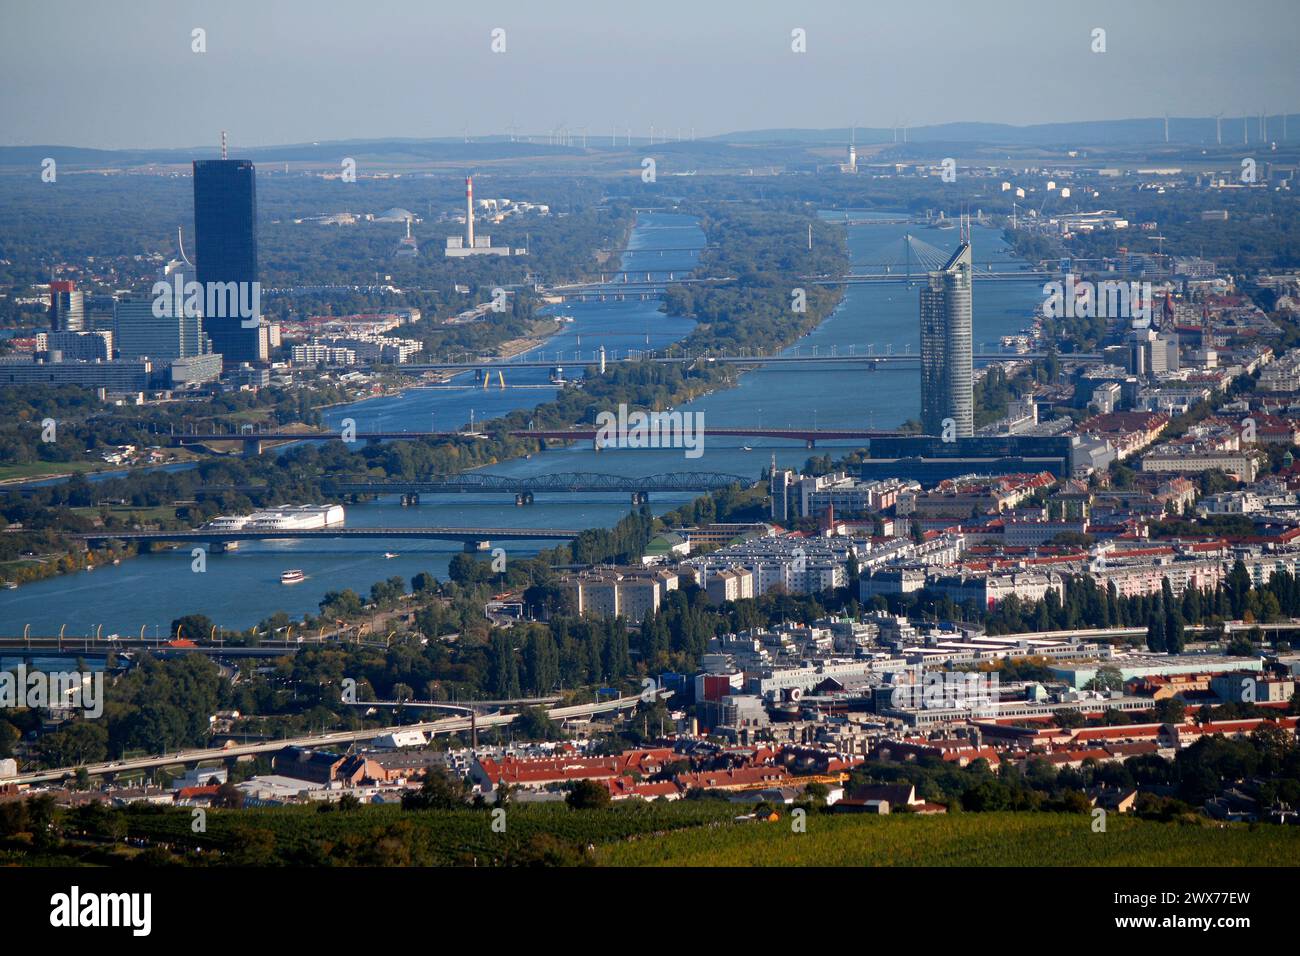 Luftbild : Donau/ Danube, DC, tour du millénaire, Tour d'Horizon, Wien, Österreich/ Vienne, Autriche (nur für redaktionelle Verwendung. Keine Werbung. Re Banque D'Images